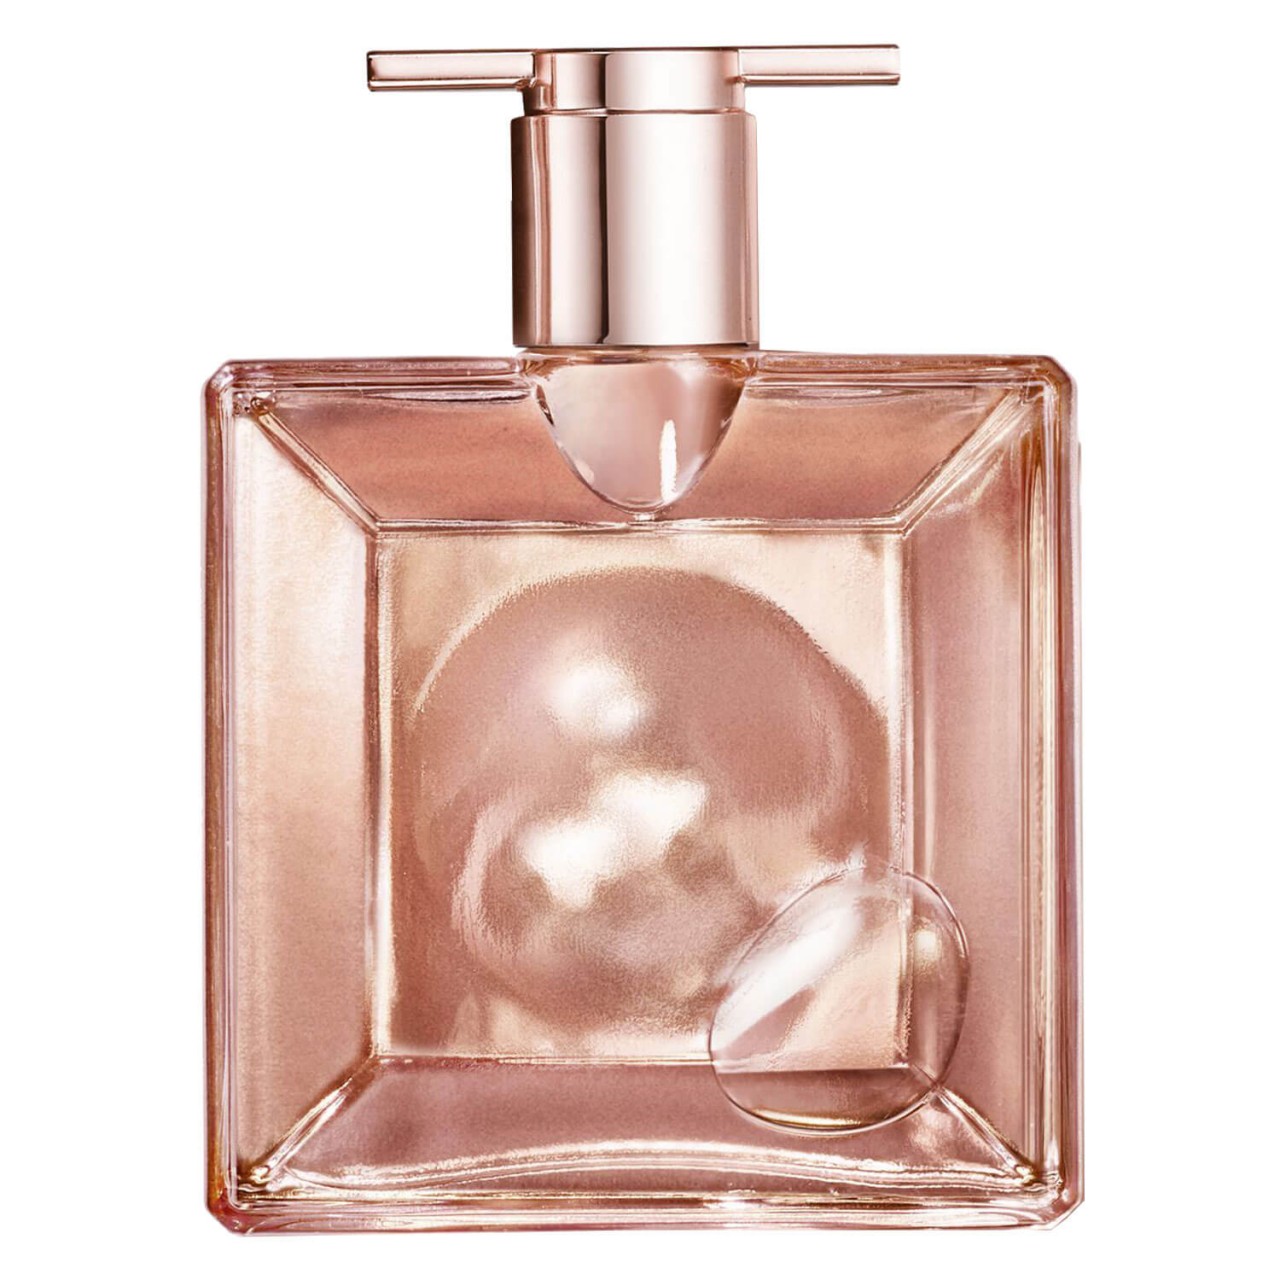 Idôle - L'Intense Eau de Parfum von Lancôme